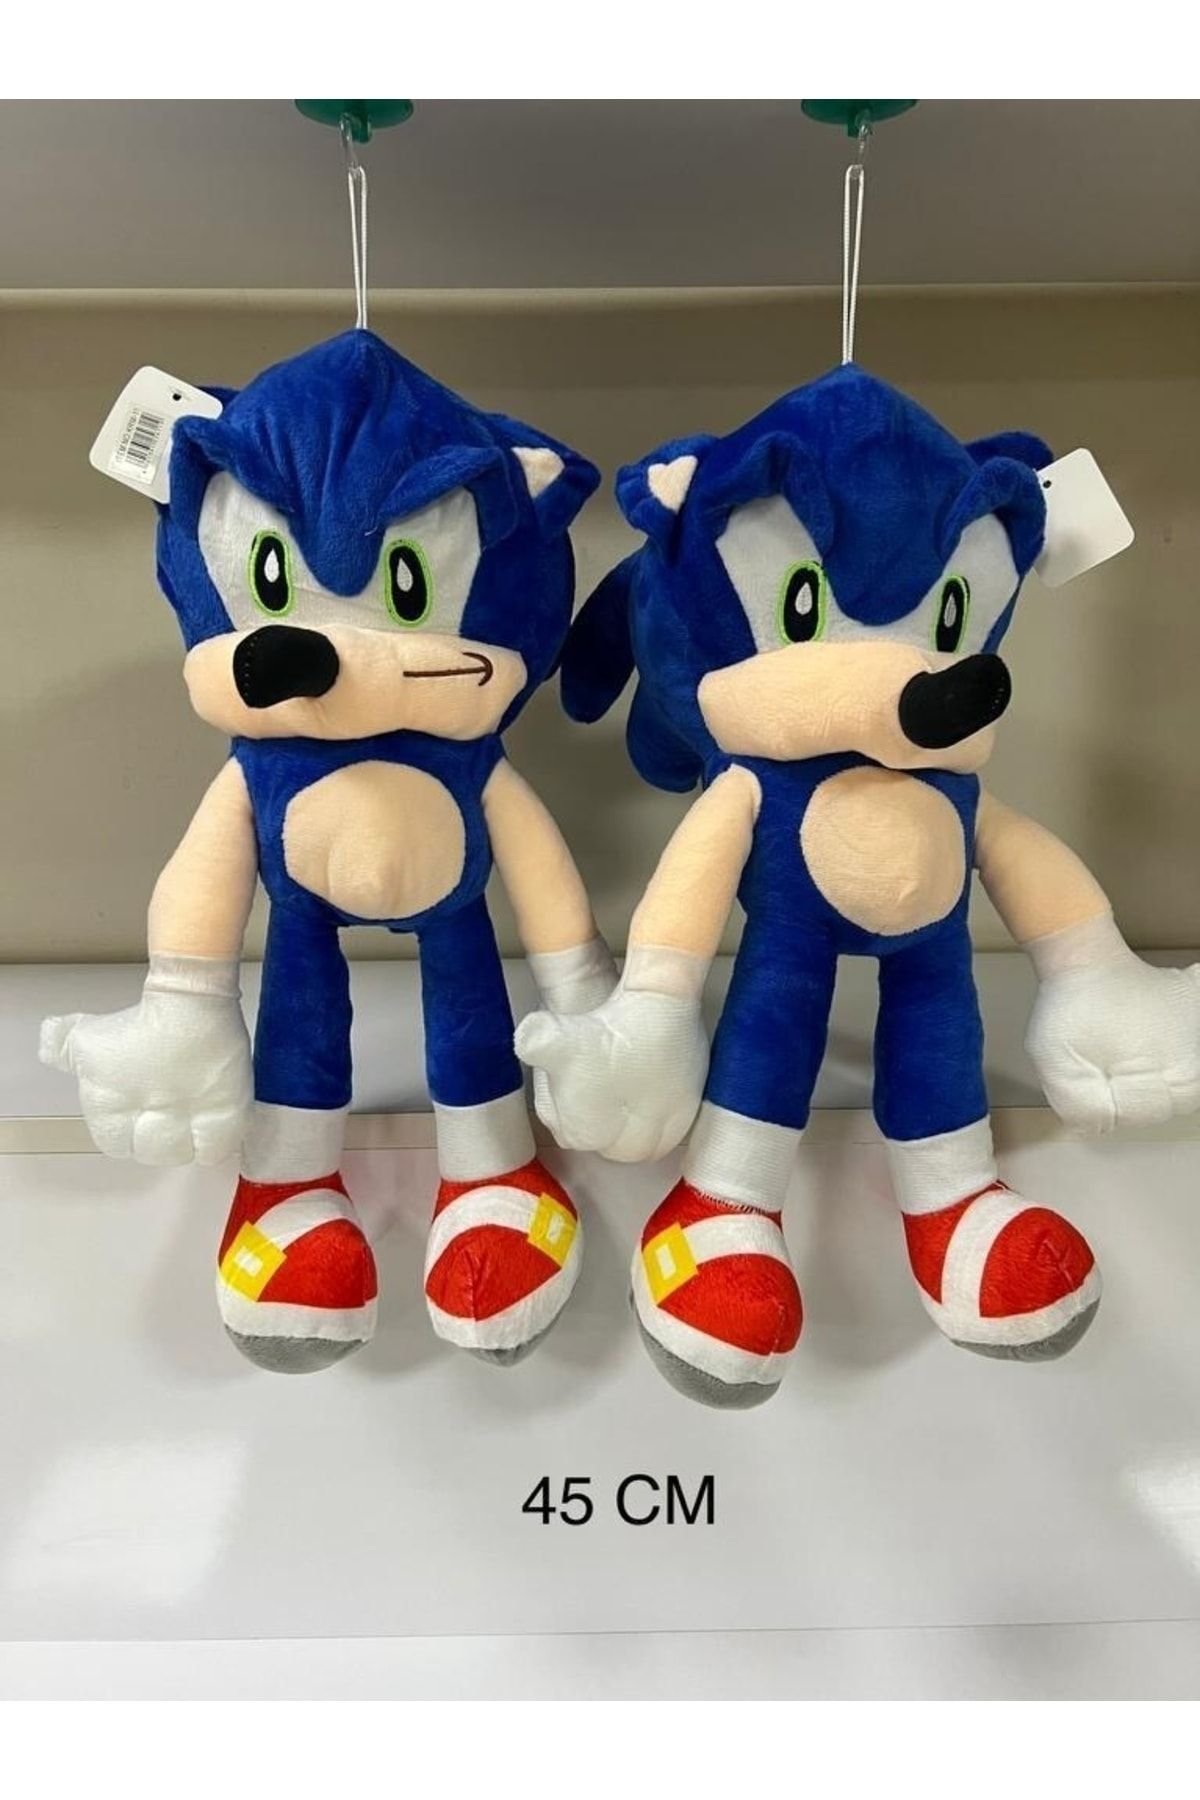 matchbang Sonic Boom Büyük Boy Kirpi Sonic Figür Peluş Oyuncak 45 Cm